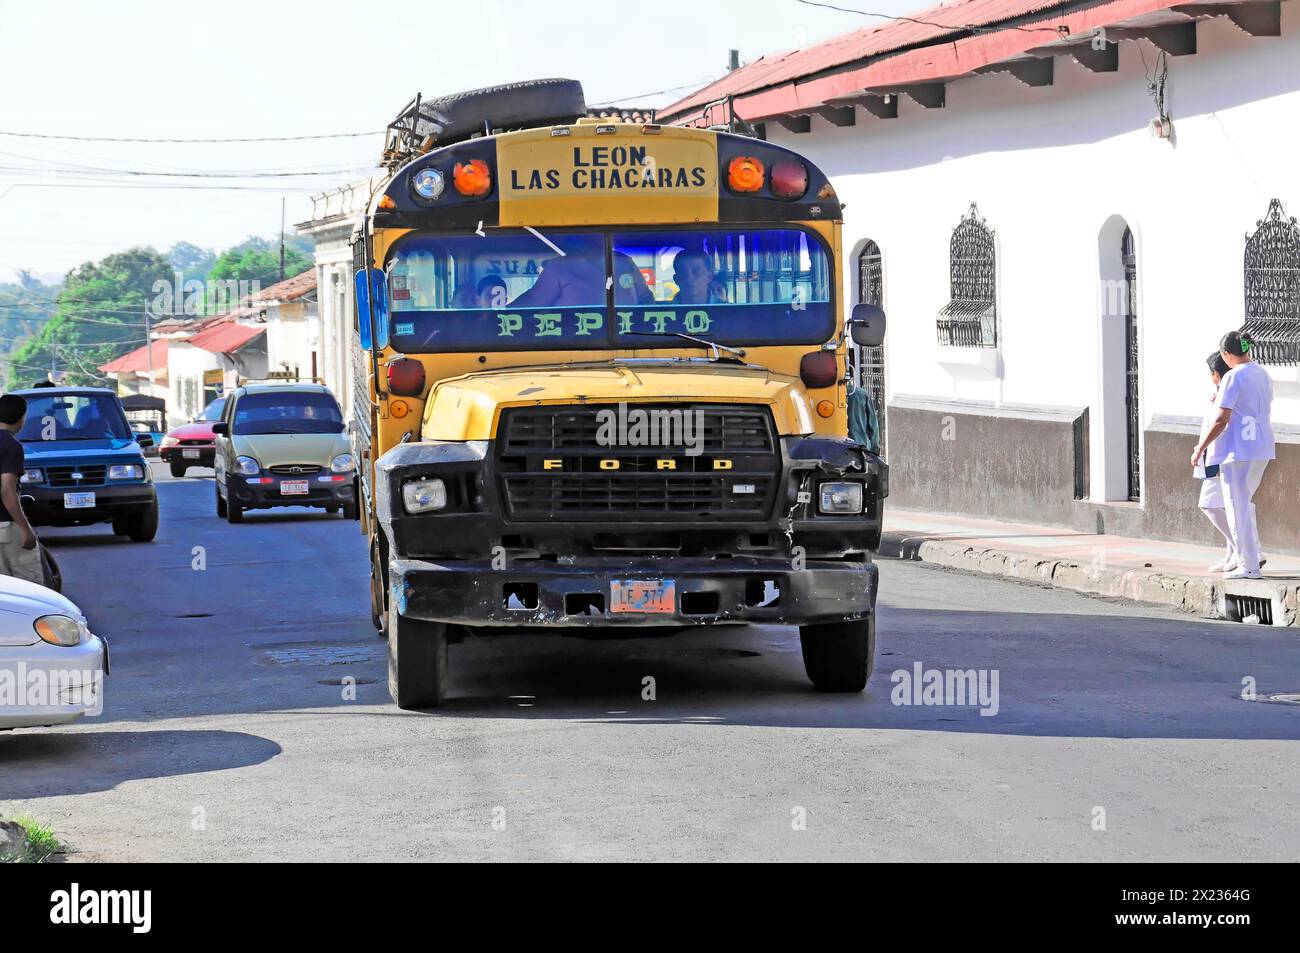 Leon, Nicaragua, Un bus coloré peint se trouve dans le flux de la circulation sur une route, Amérique centrale, Amérique centrale Banque D'Images